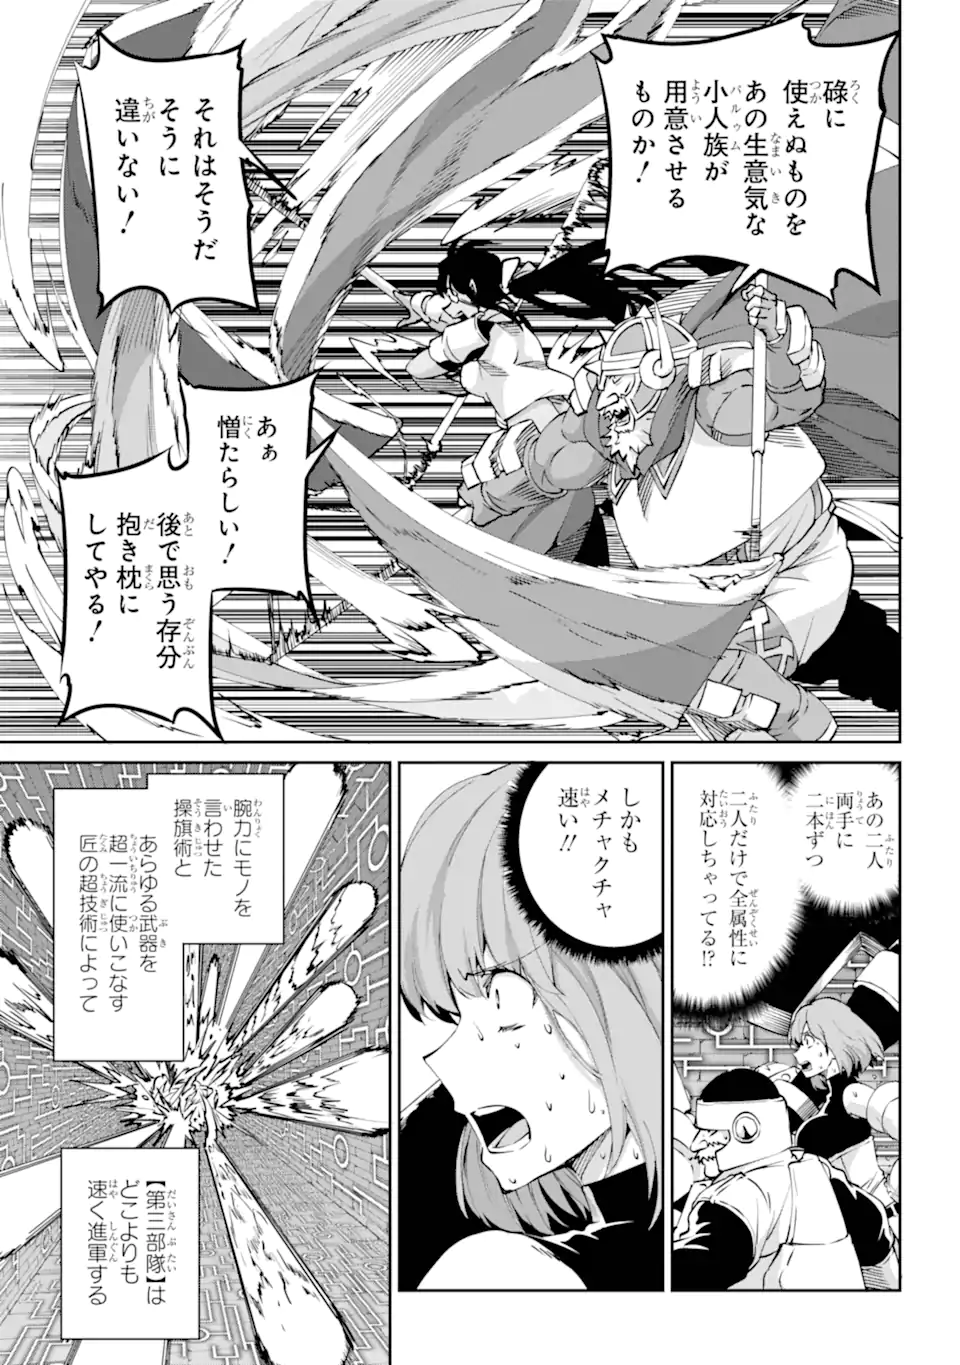 Dungeon ni Deai wo Motomeru no wa Machigatte Iru Darou ka Gaiden - Sword Oratoria - Chapter 117.3 - Page 4